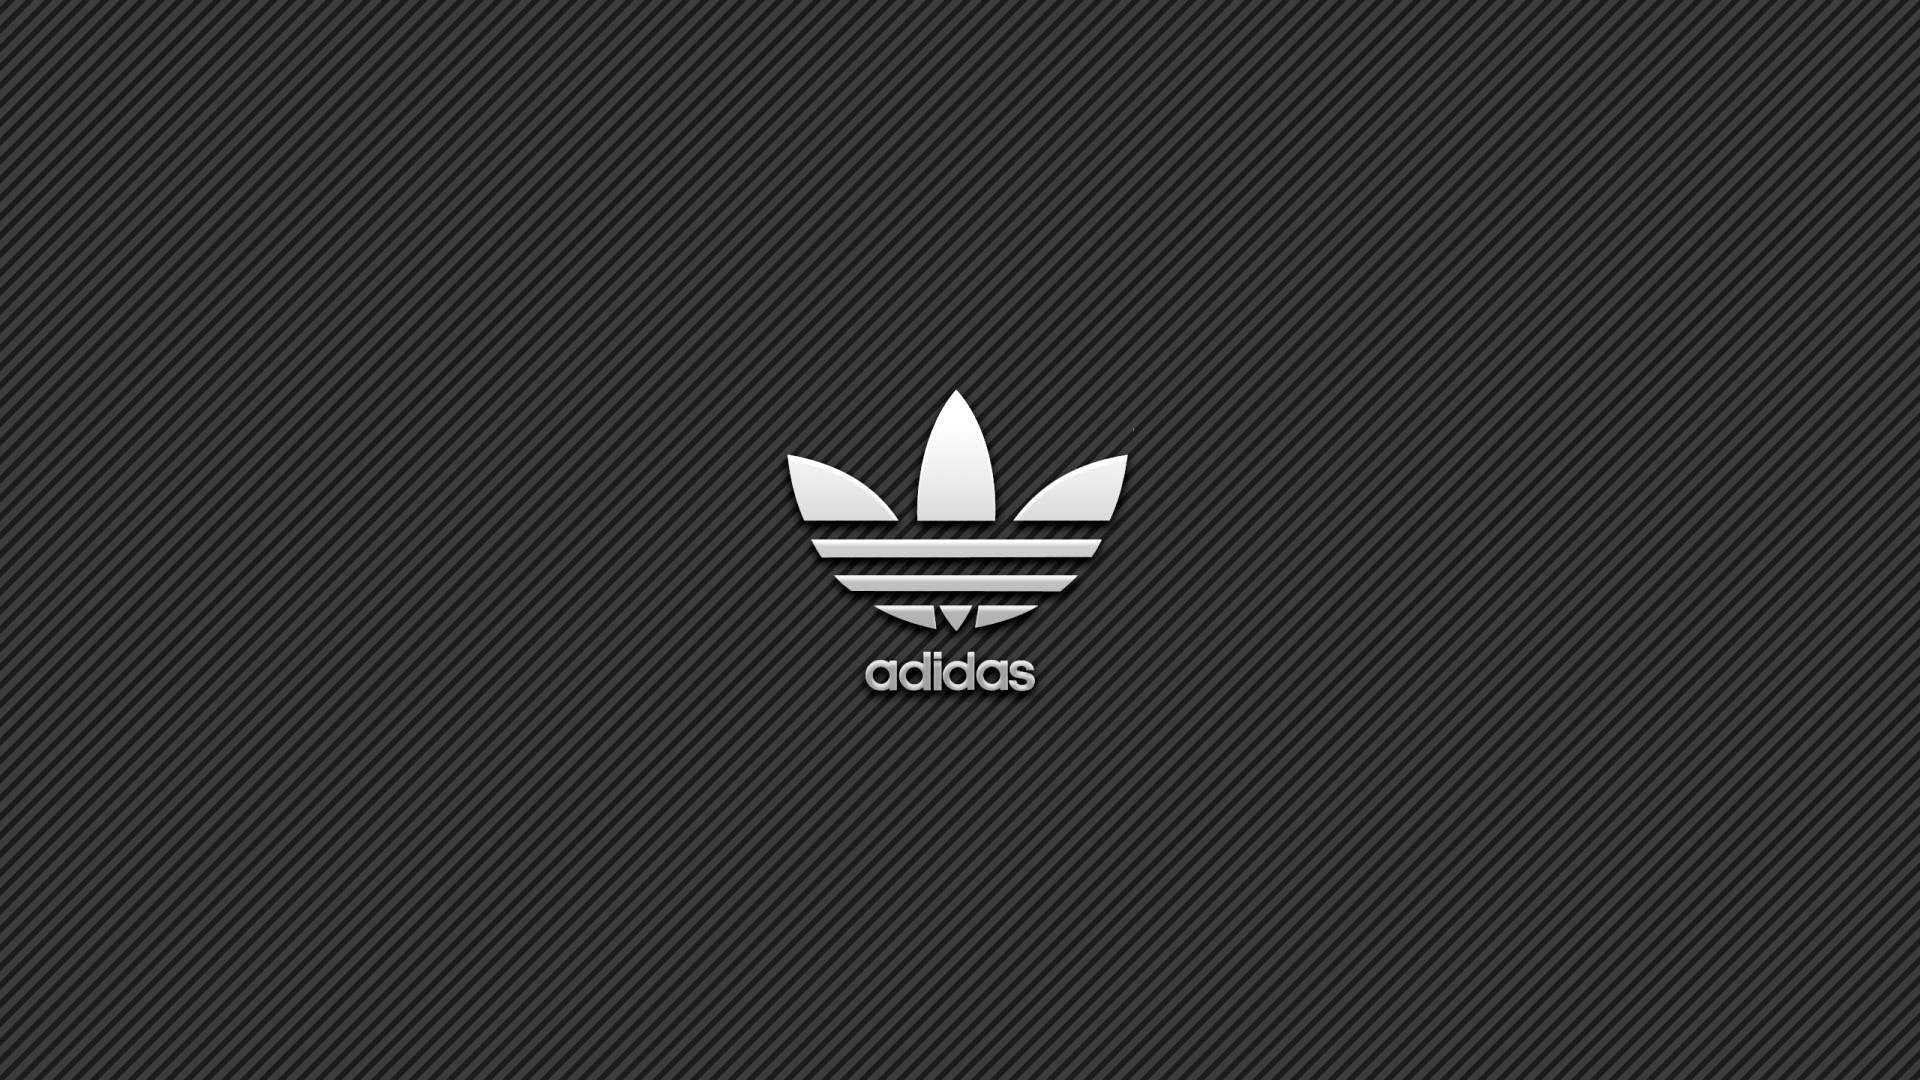 Adidas Facebook Cover Wallpaper